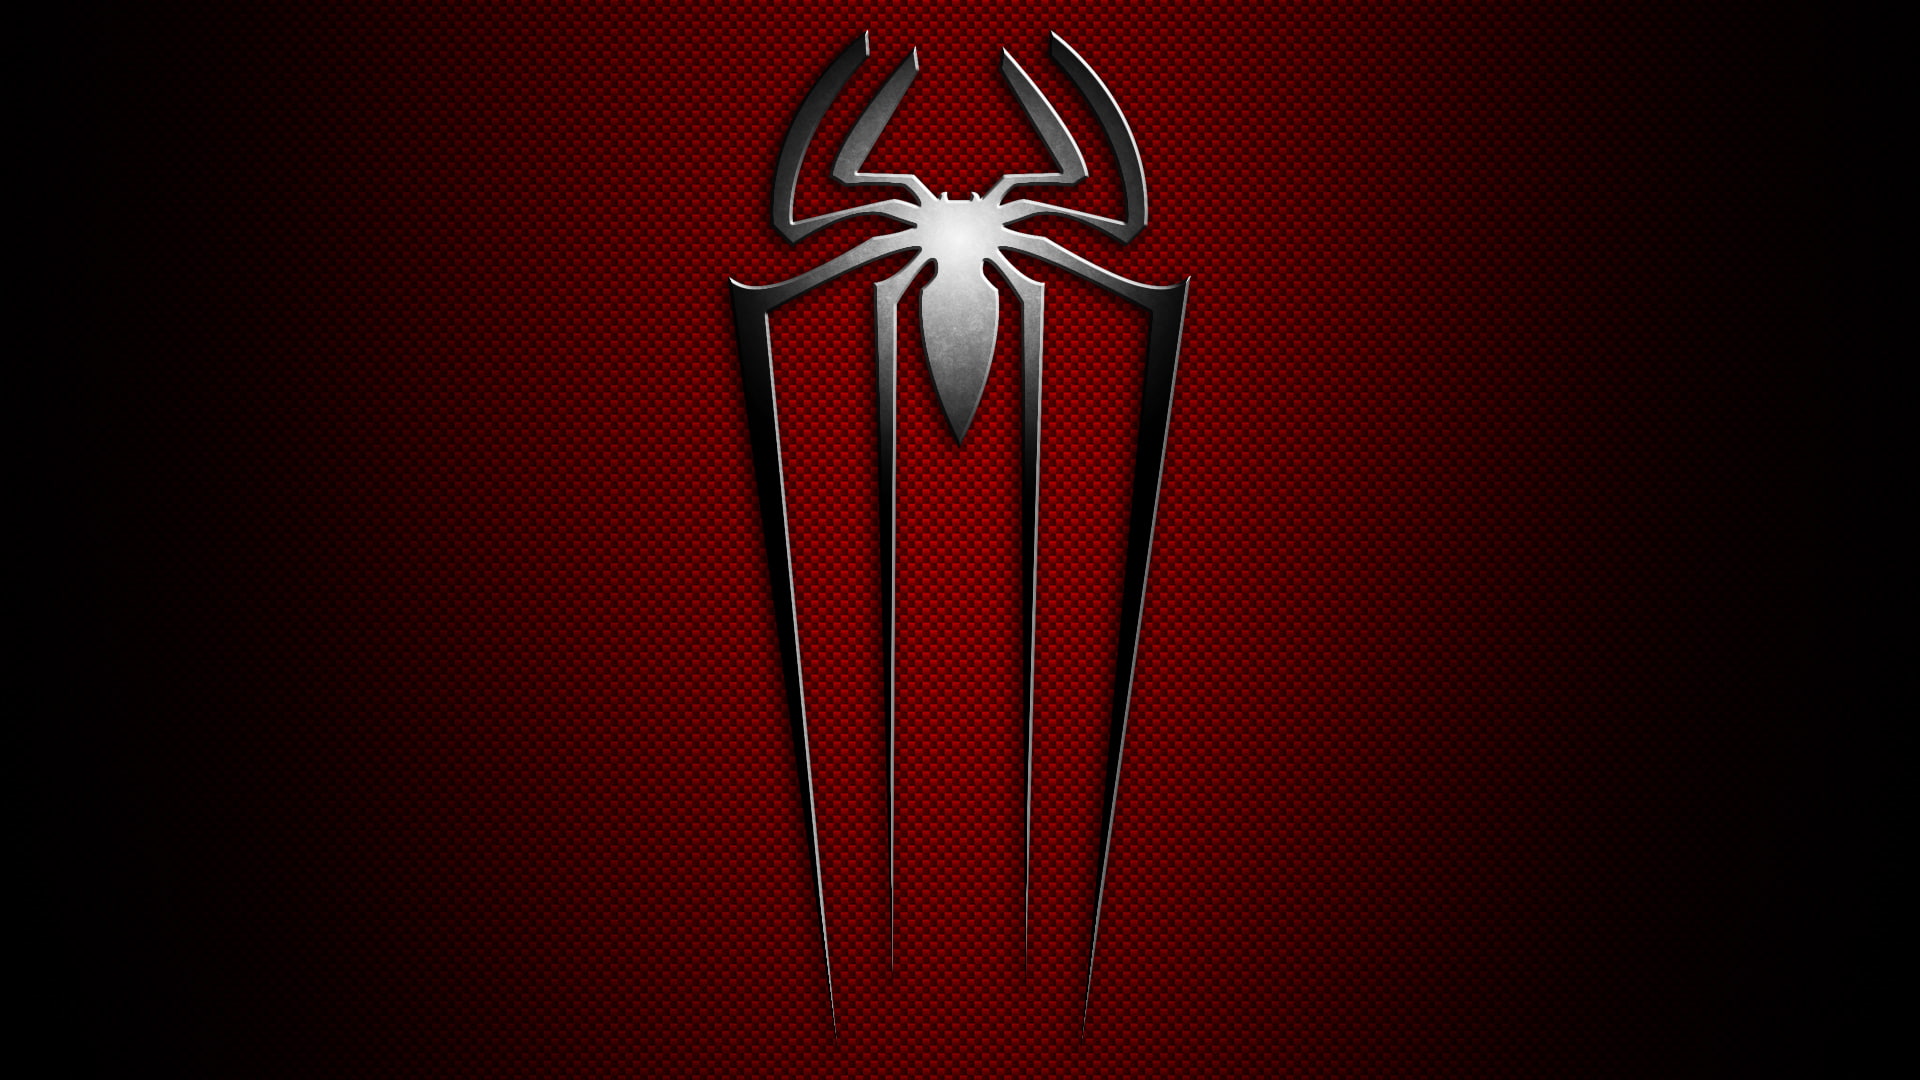 Spider-Man, The Amazing Spider-Man, Logo, Red